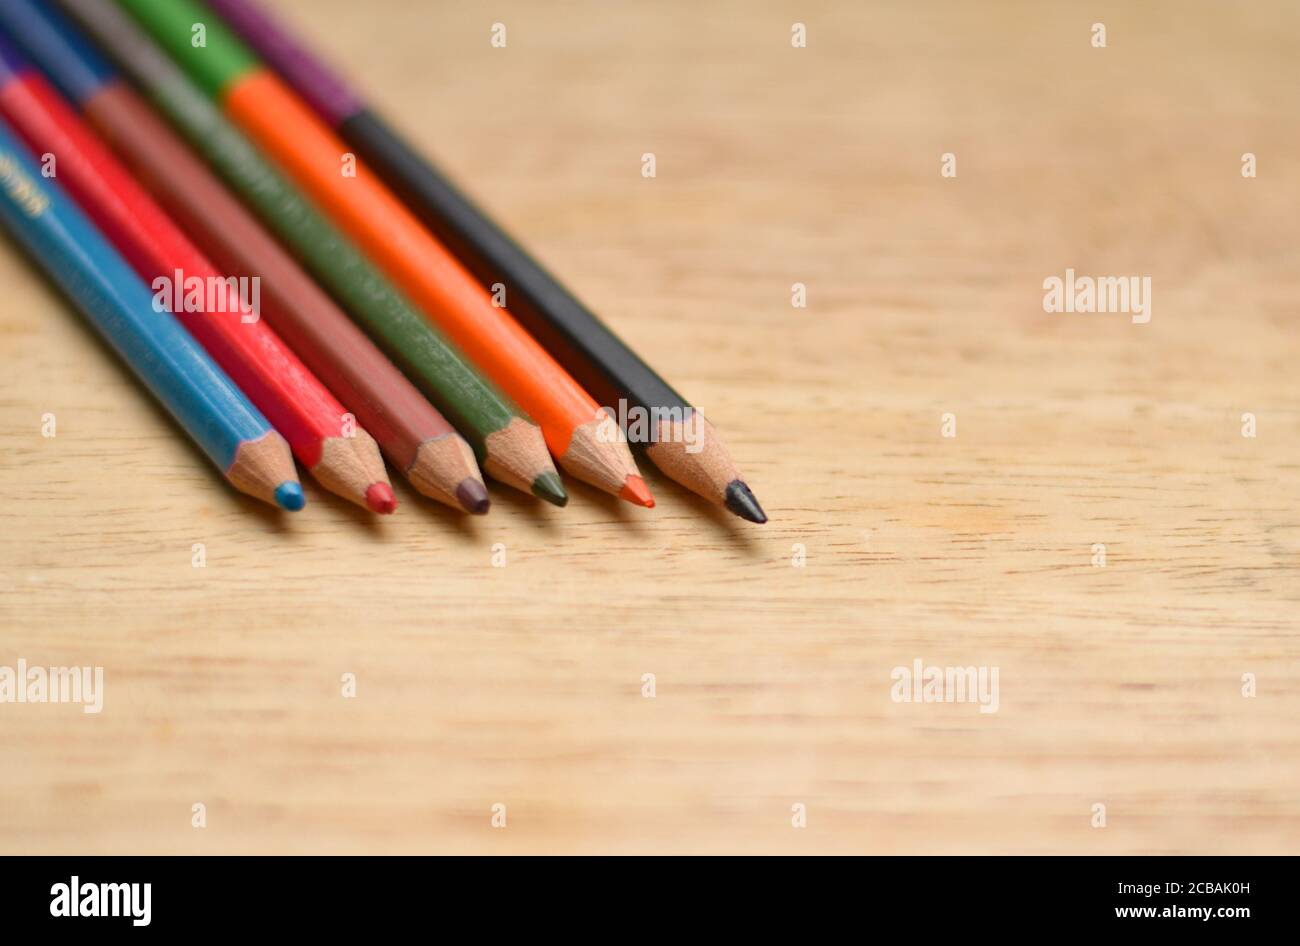 Résumé plat / disposition avec crayons de couleur aiguisés placés sur une planche en bois. Les couleurs bleu, rouge, orange, vert, noir sont visibles ici Banque D'Images